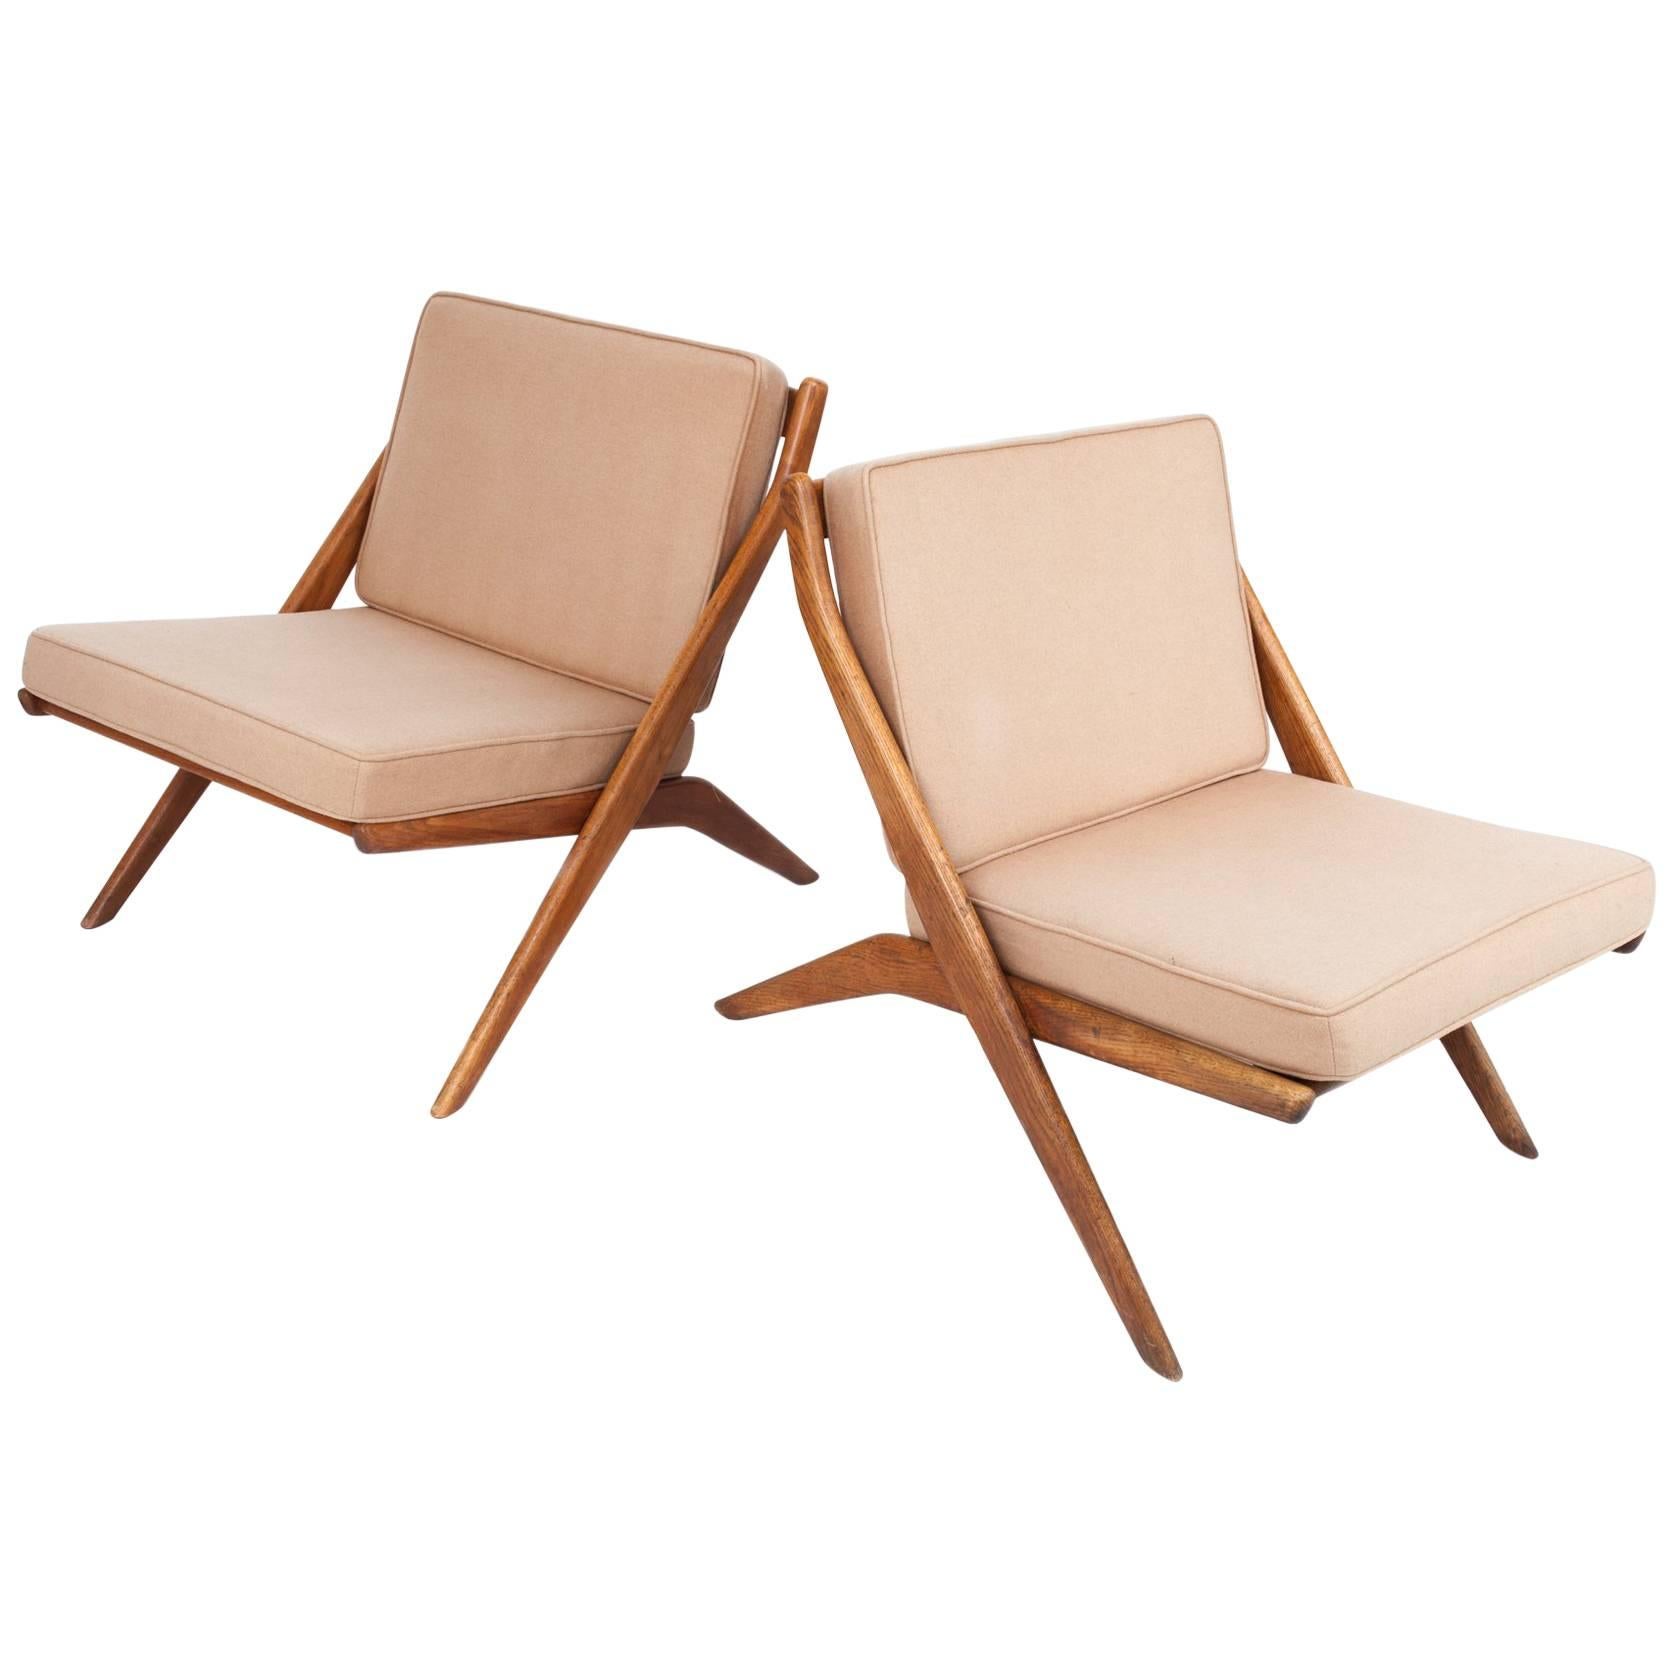 Folke Ohlsson: Pair of Tan Scandinavian Modern Scissor Chairs in Walnut, 1950's